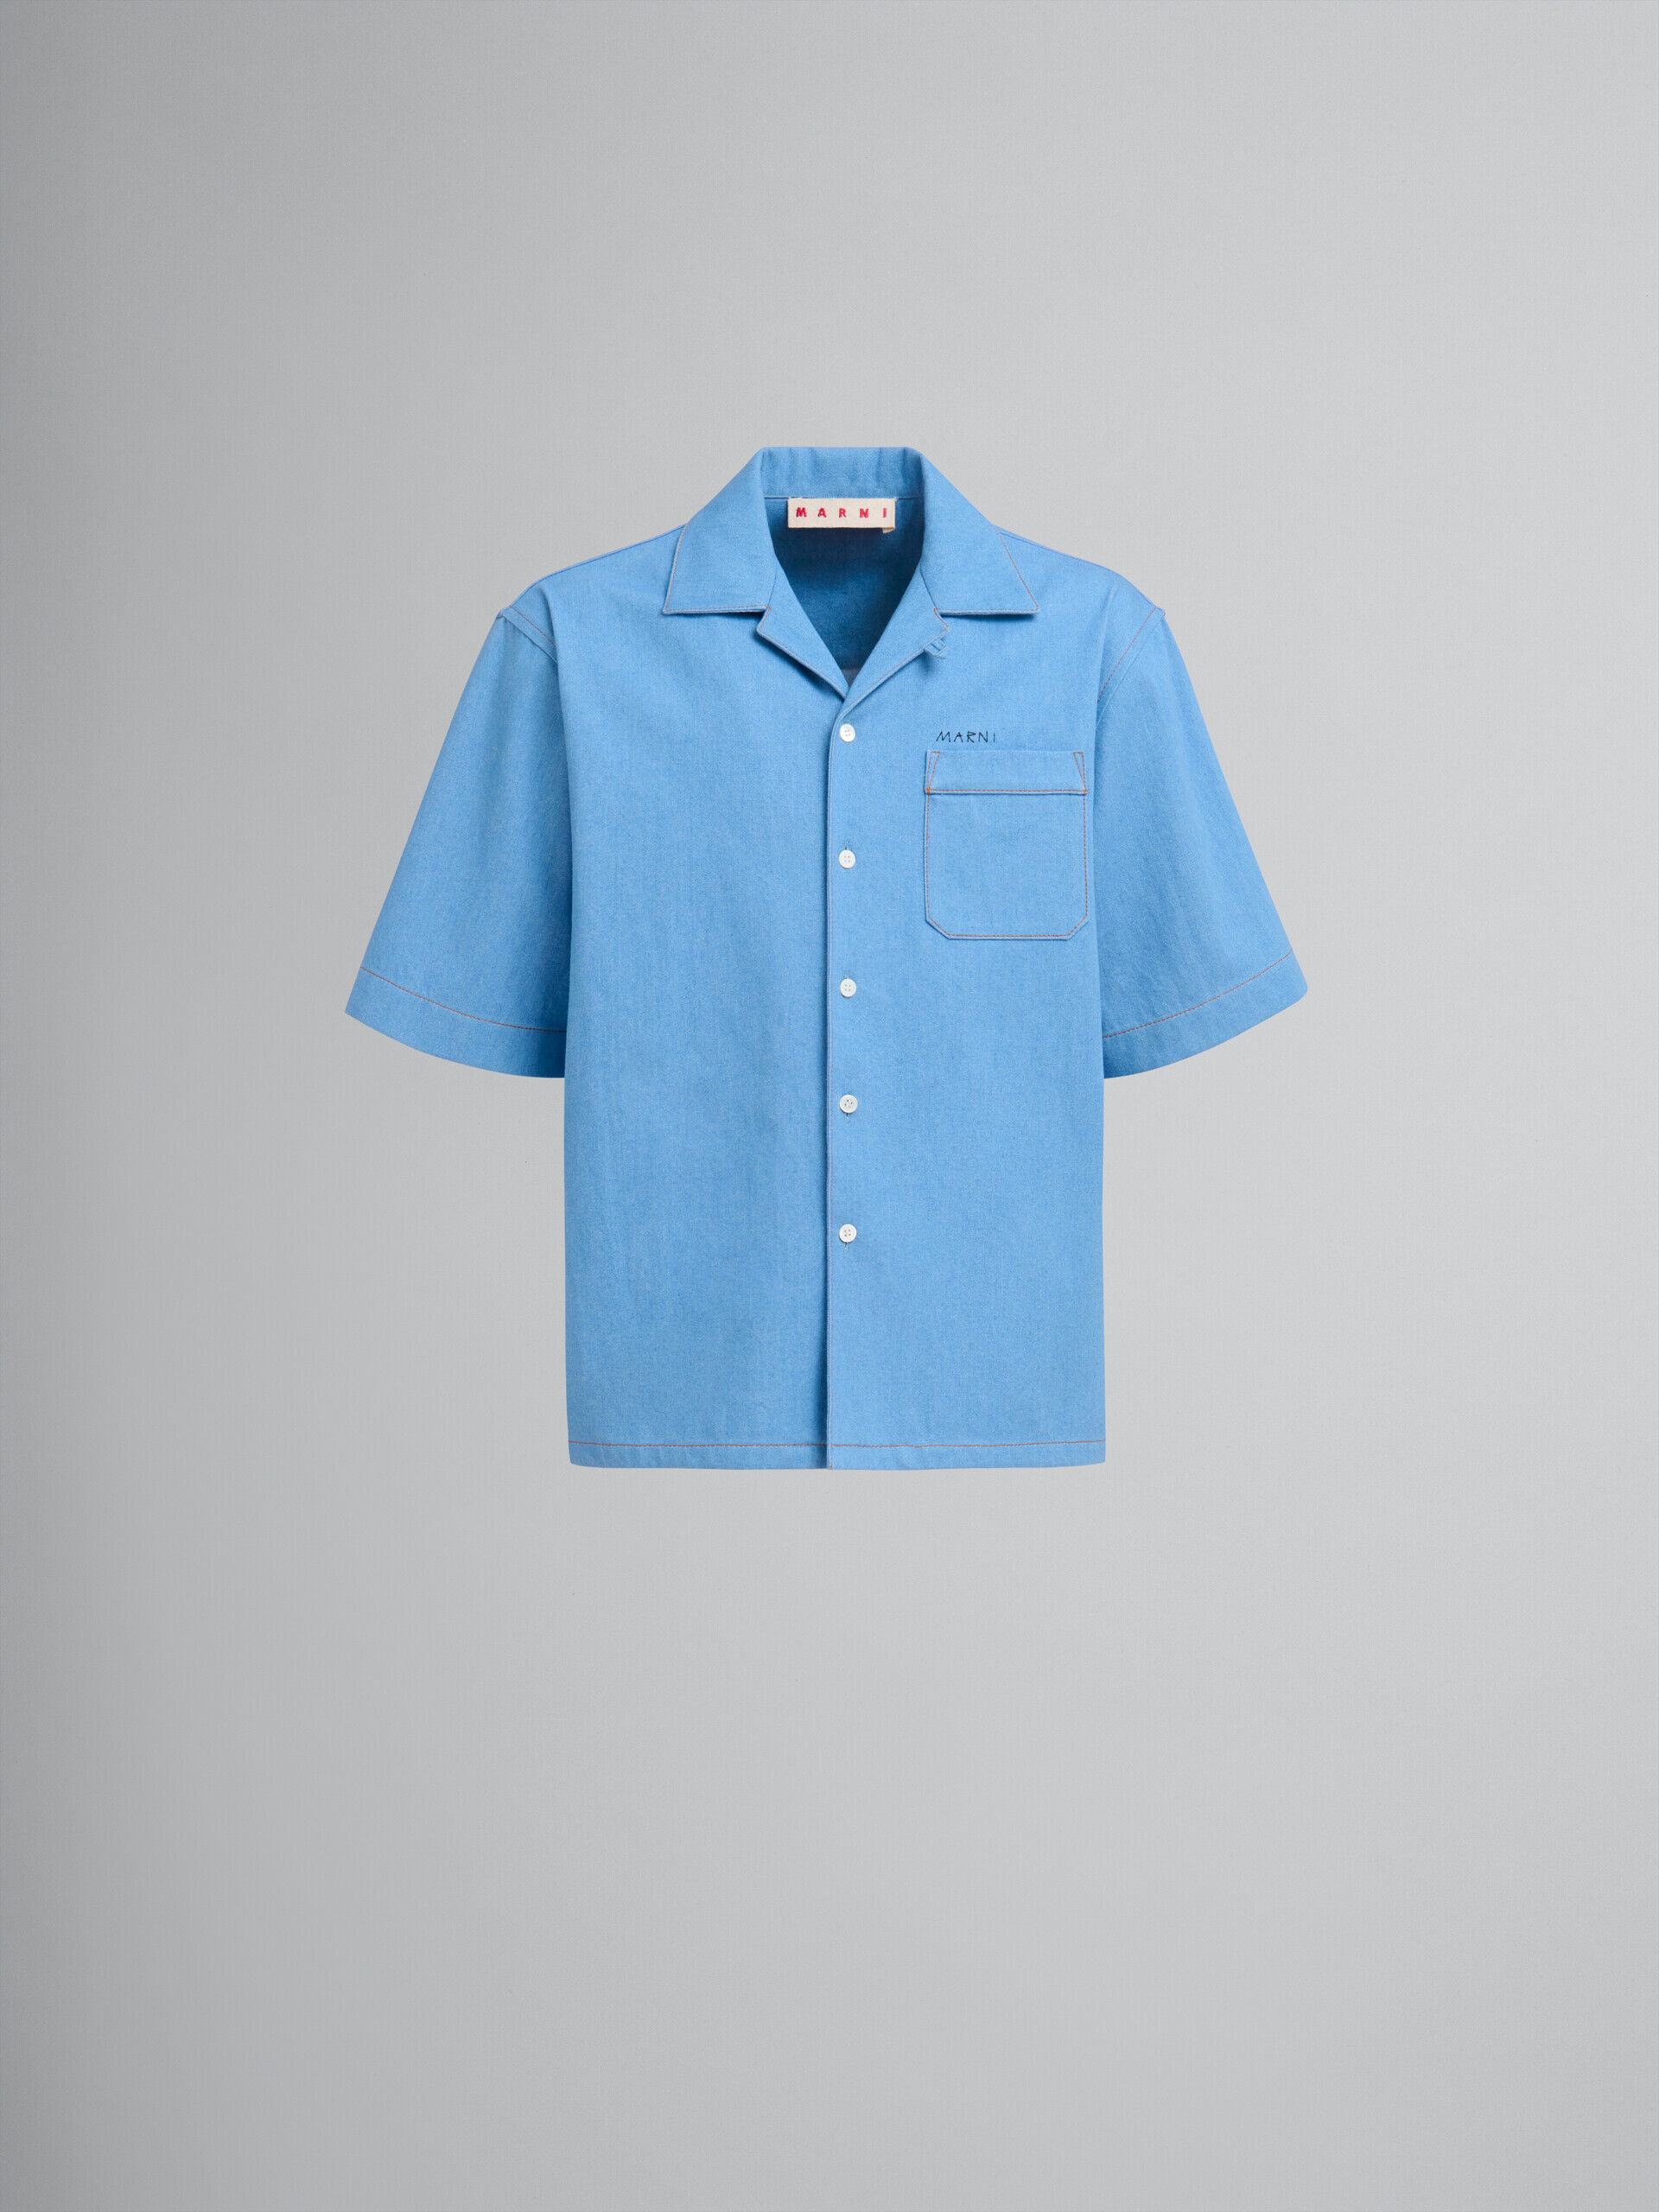 MARNI - マルニ メンディングロゴ入り ボウリングシャツ ブルー - 24S